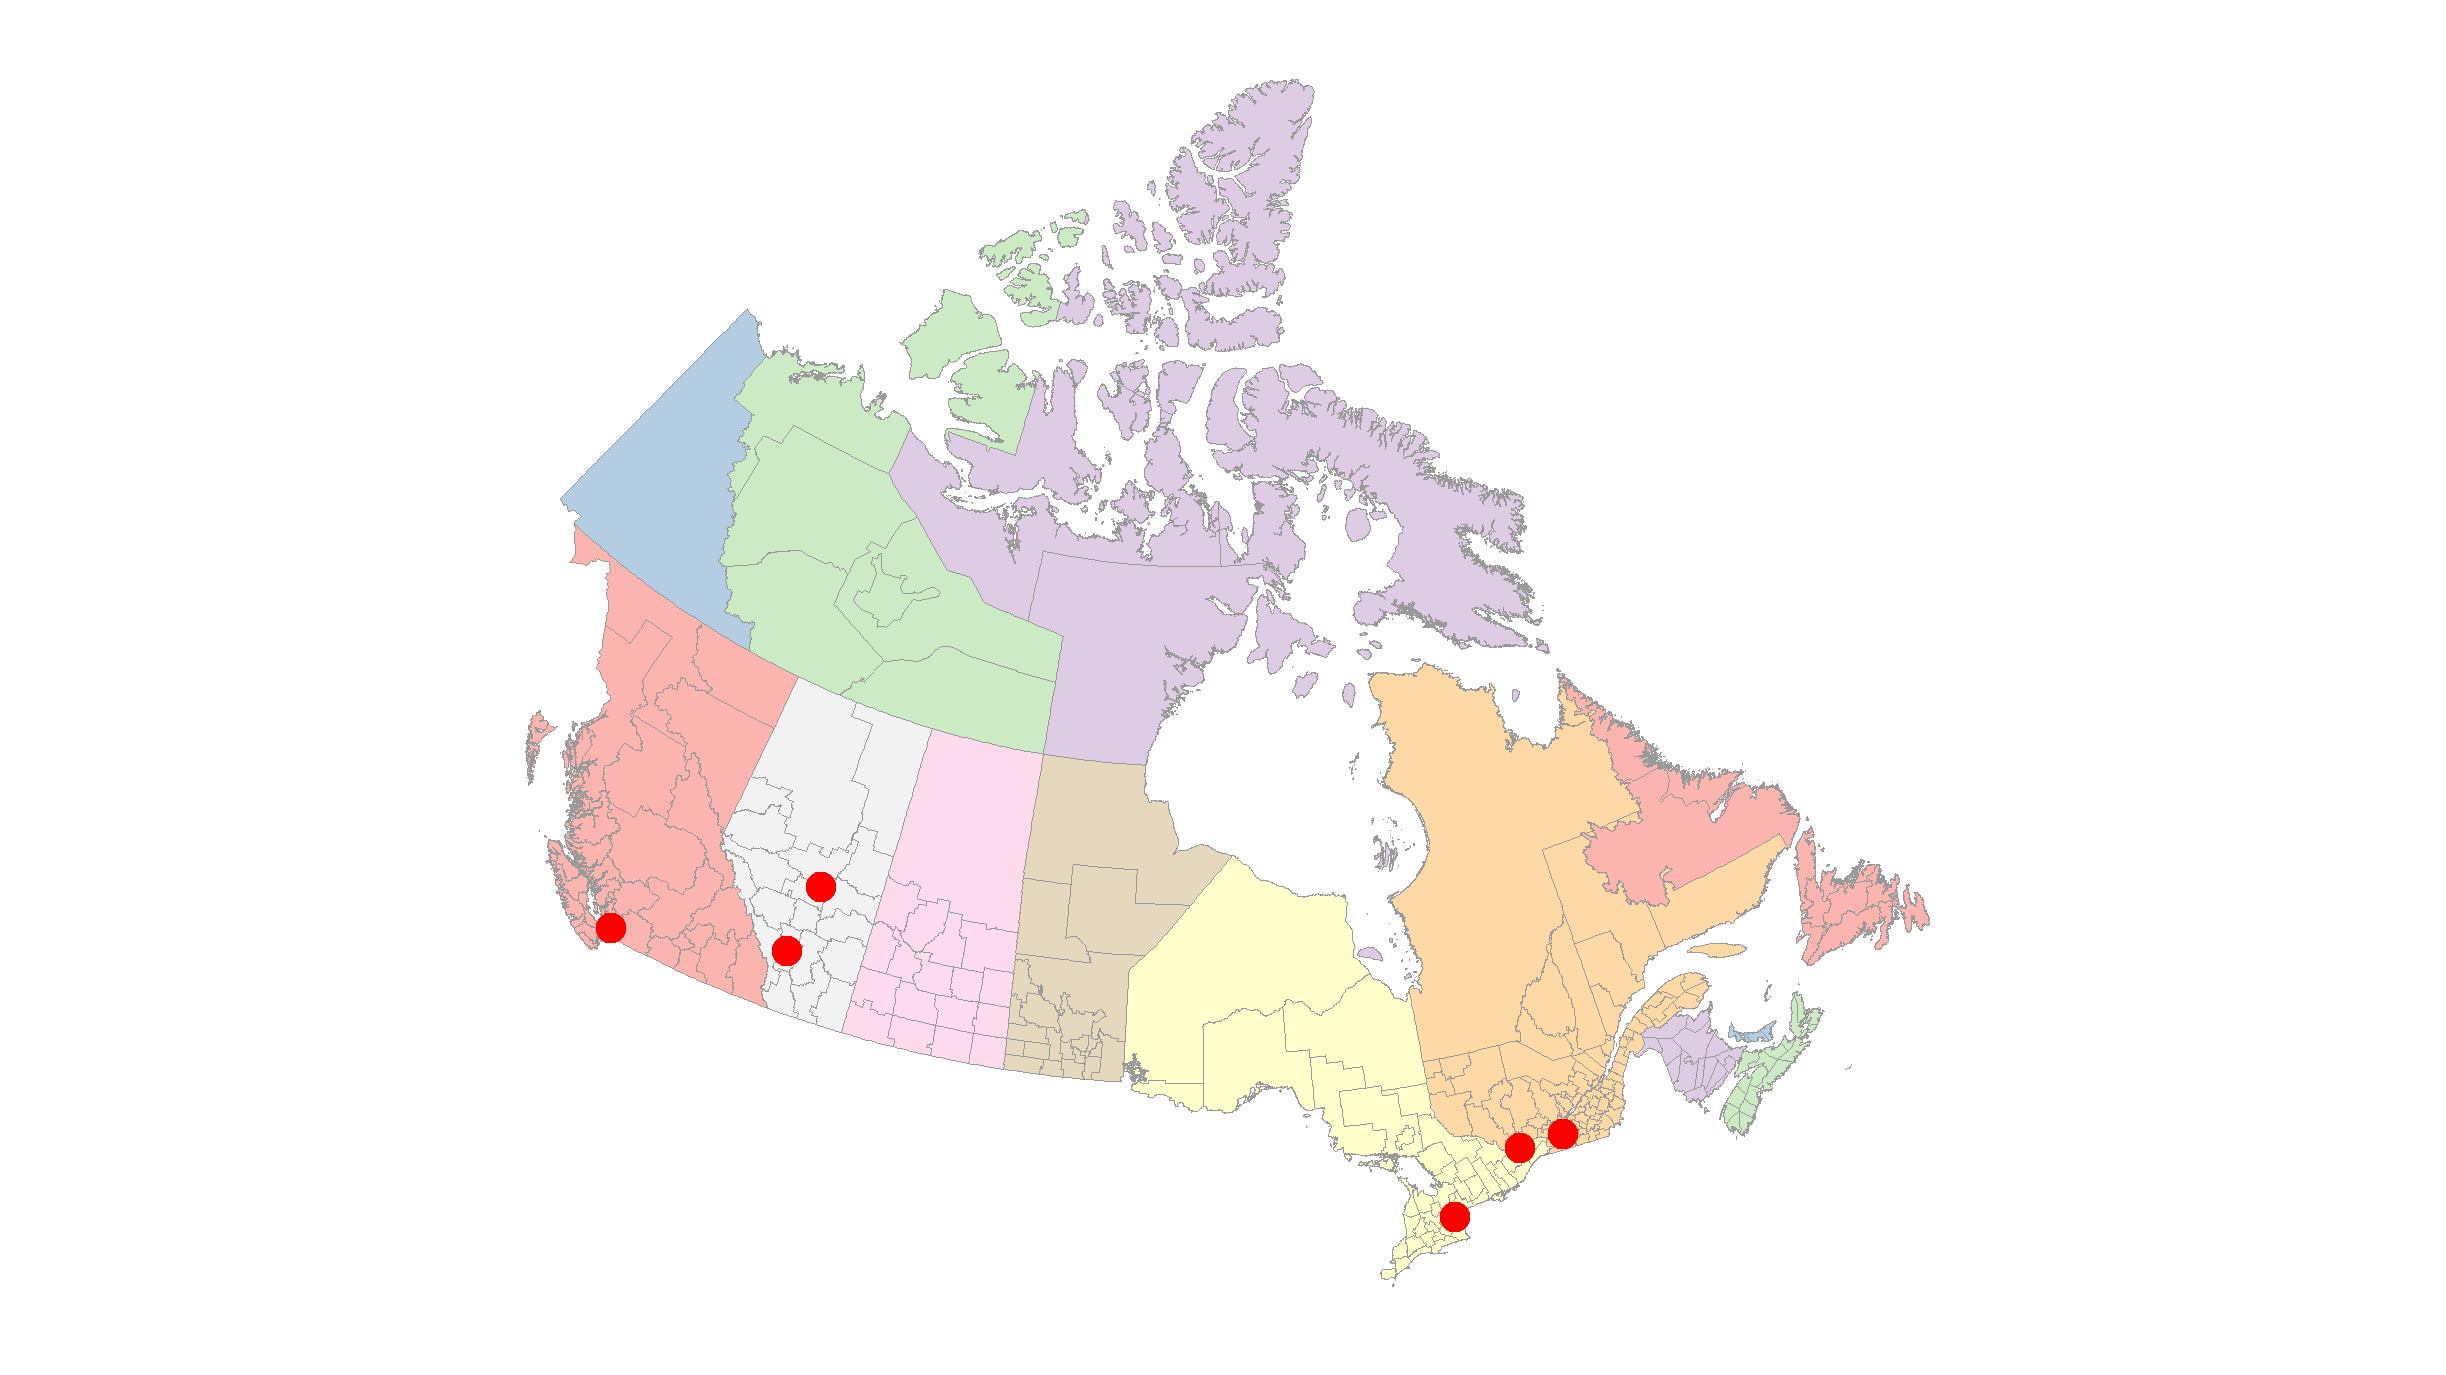 Canada Maps drawn in R